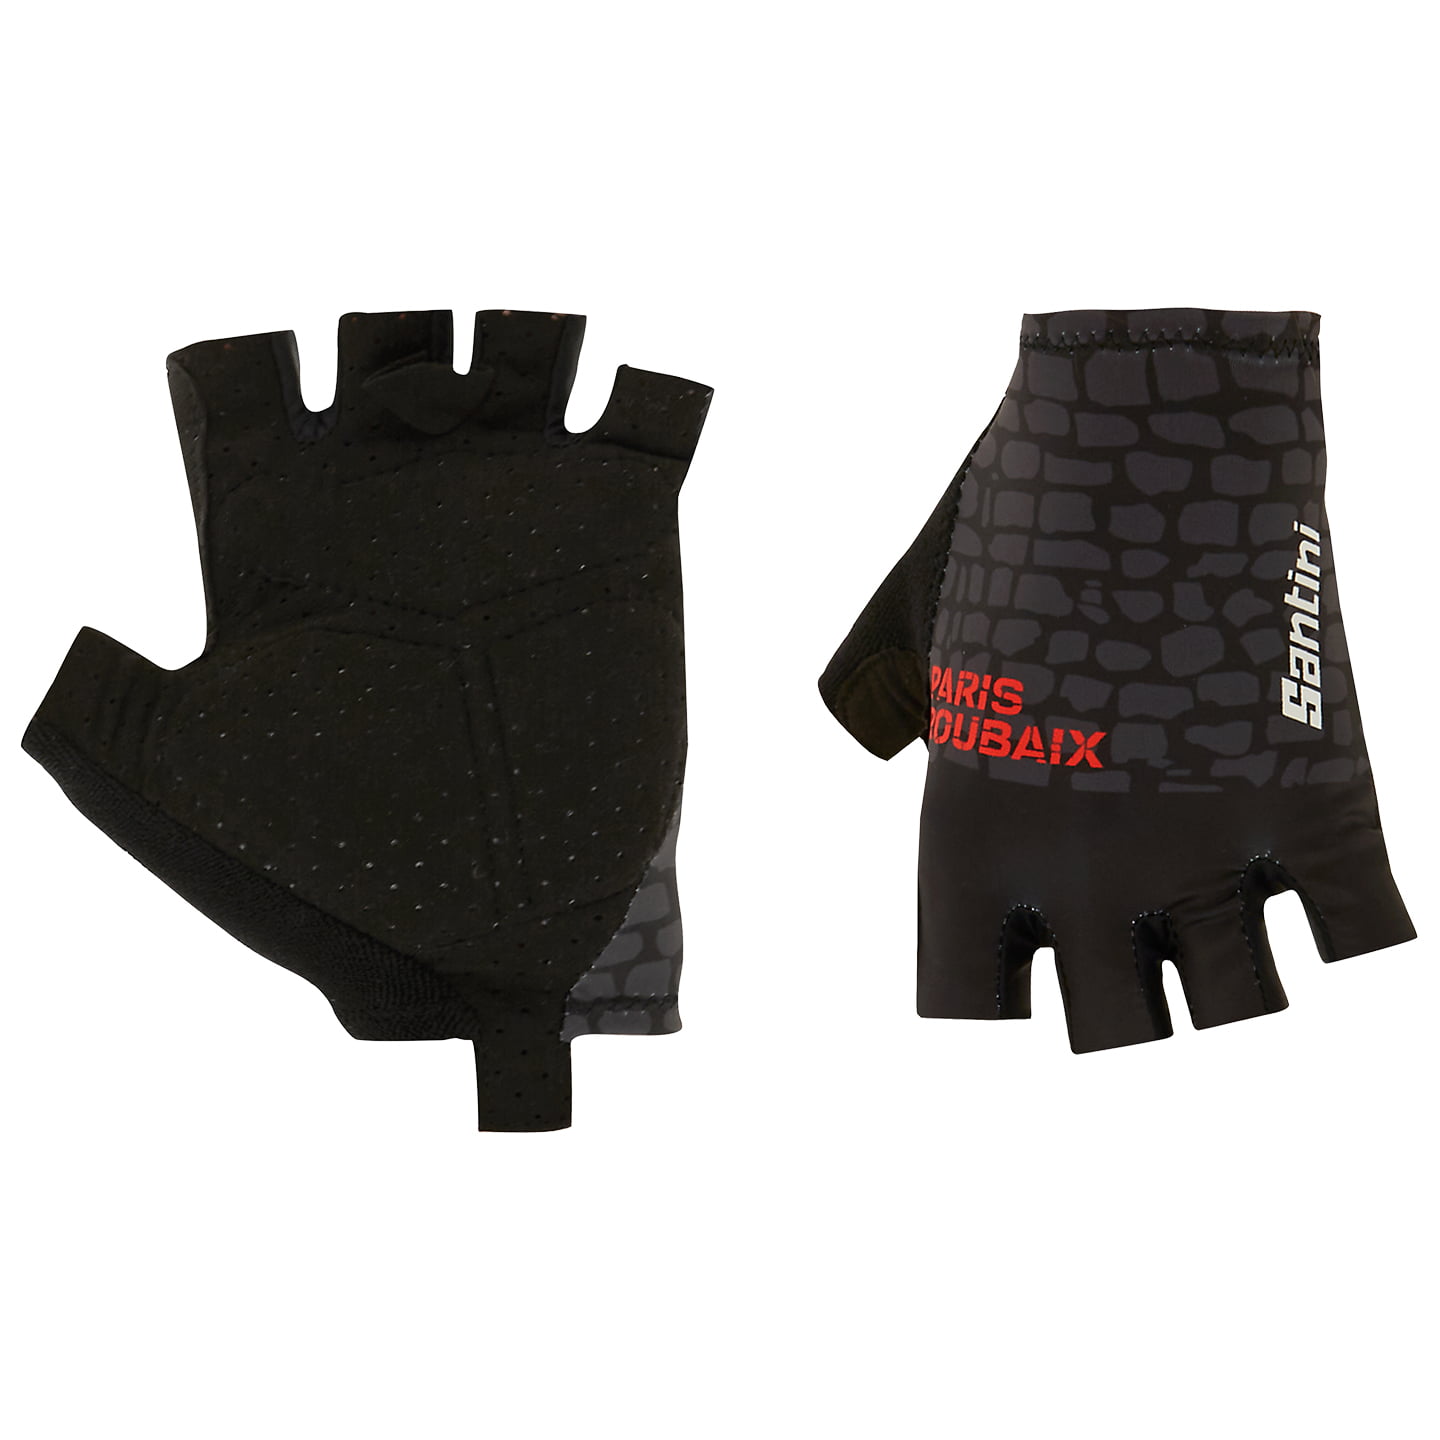 SANTINI Paris-Roubaix 2023 Cycling Gloves, for men, size S, Cycling gloves, Cycling clothing